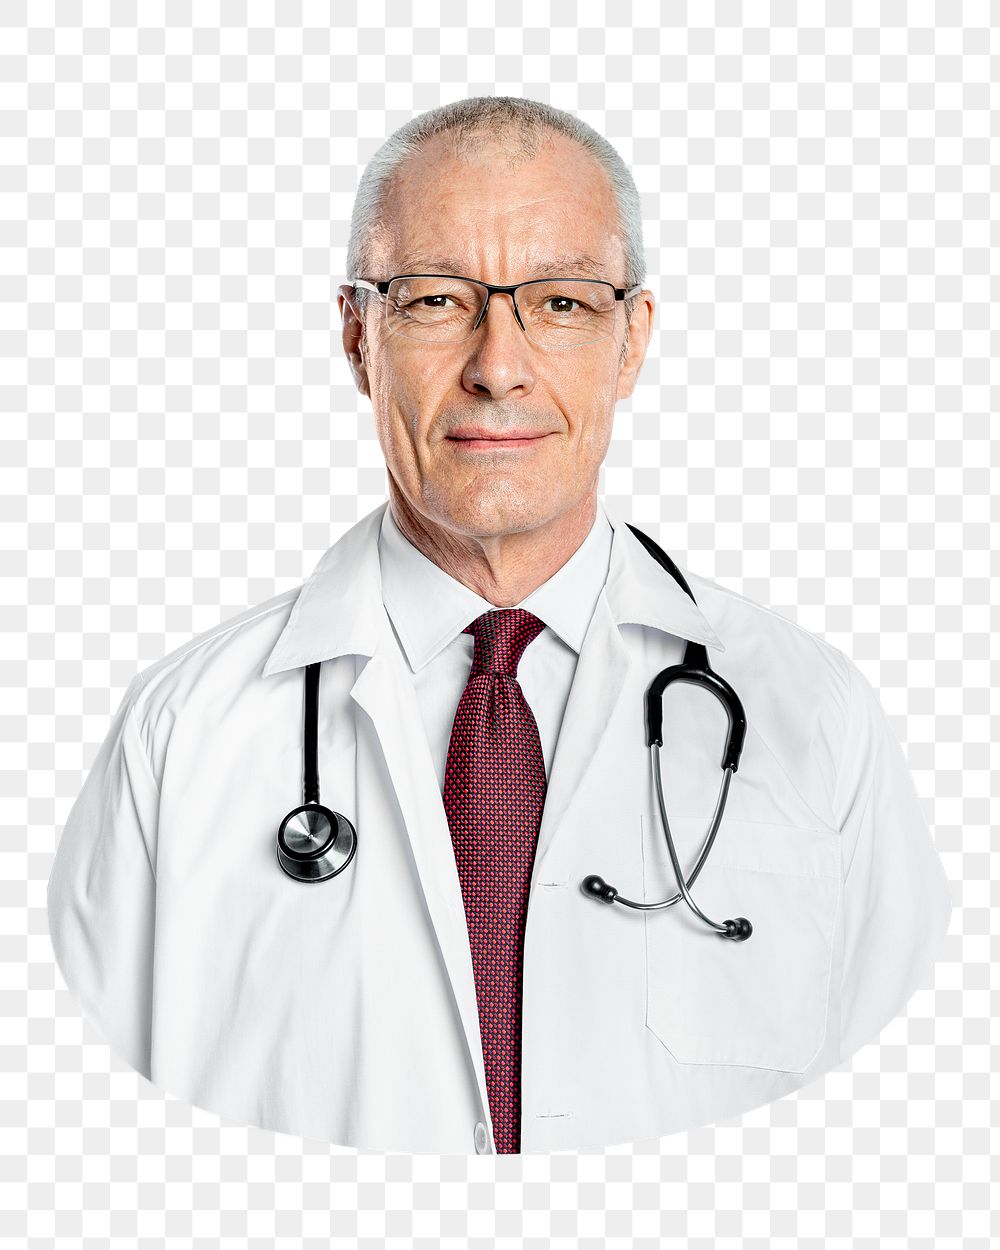 Smiling doctor png, transparent background